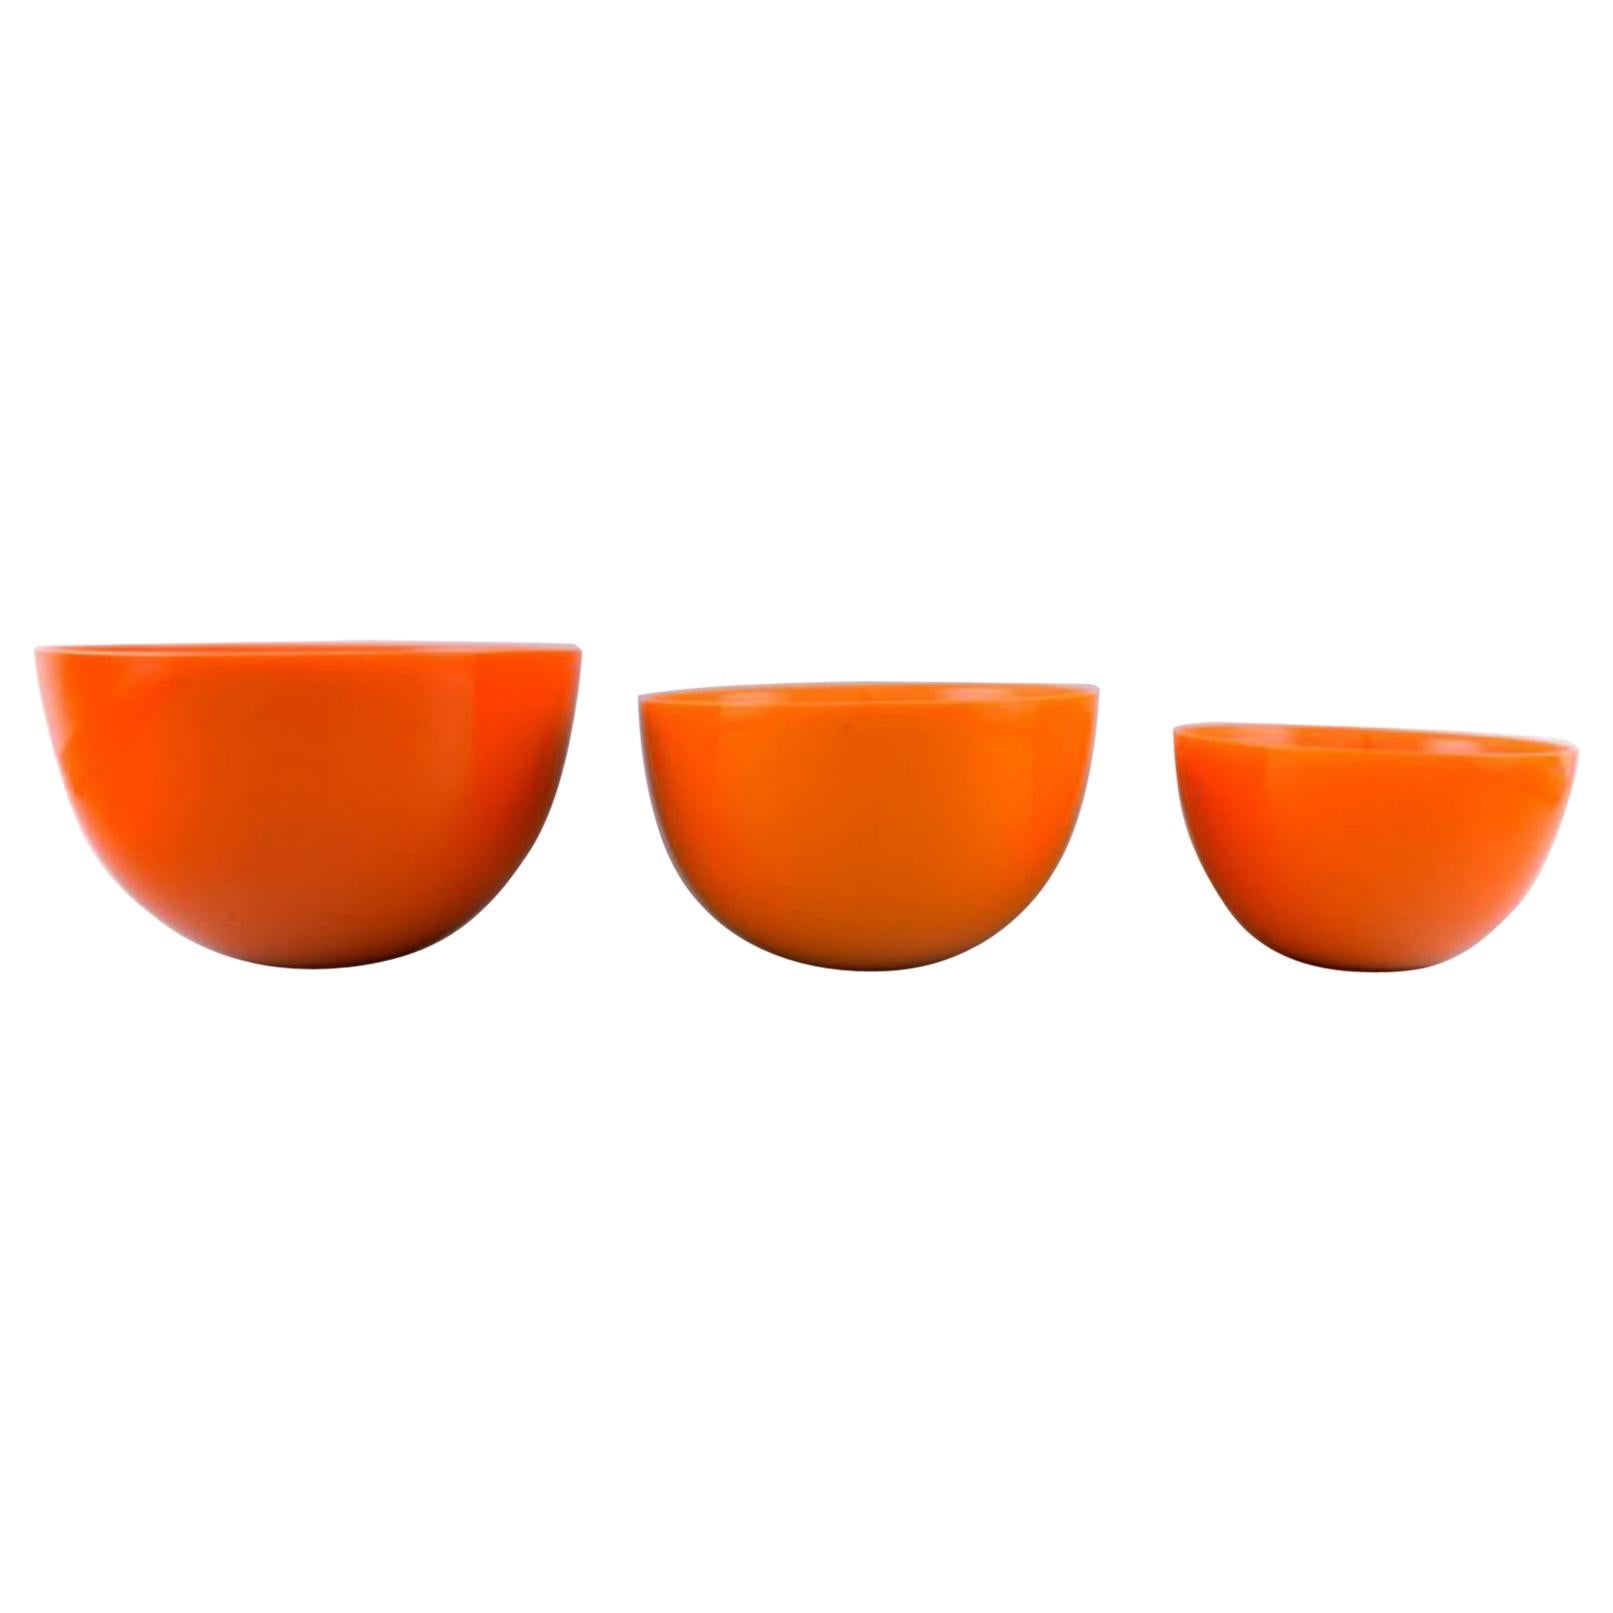 Sven Palmqvist for Orrefors, Sweden, 3 Orange "Colora" Bowls in Art Glass